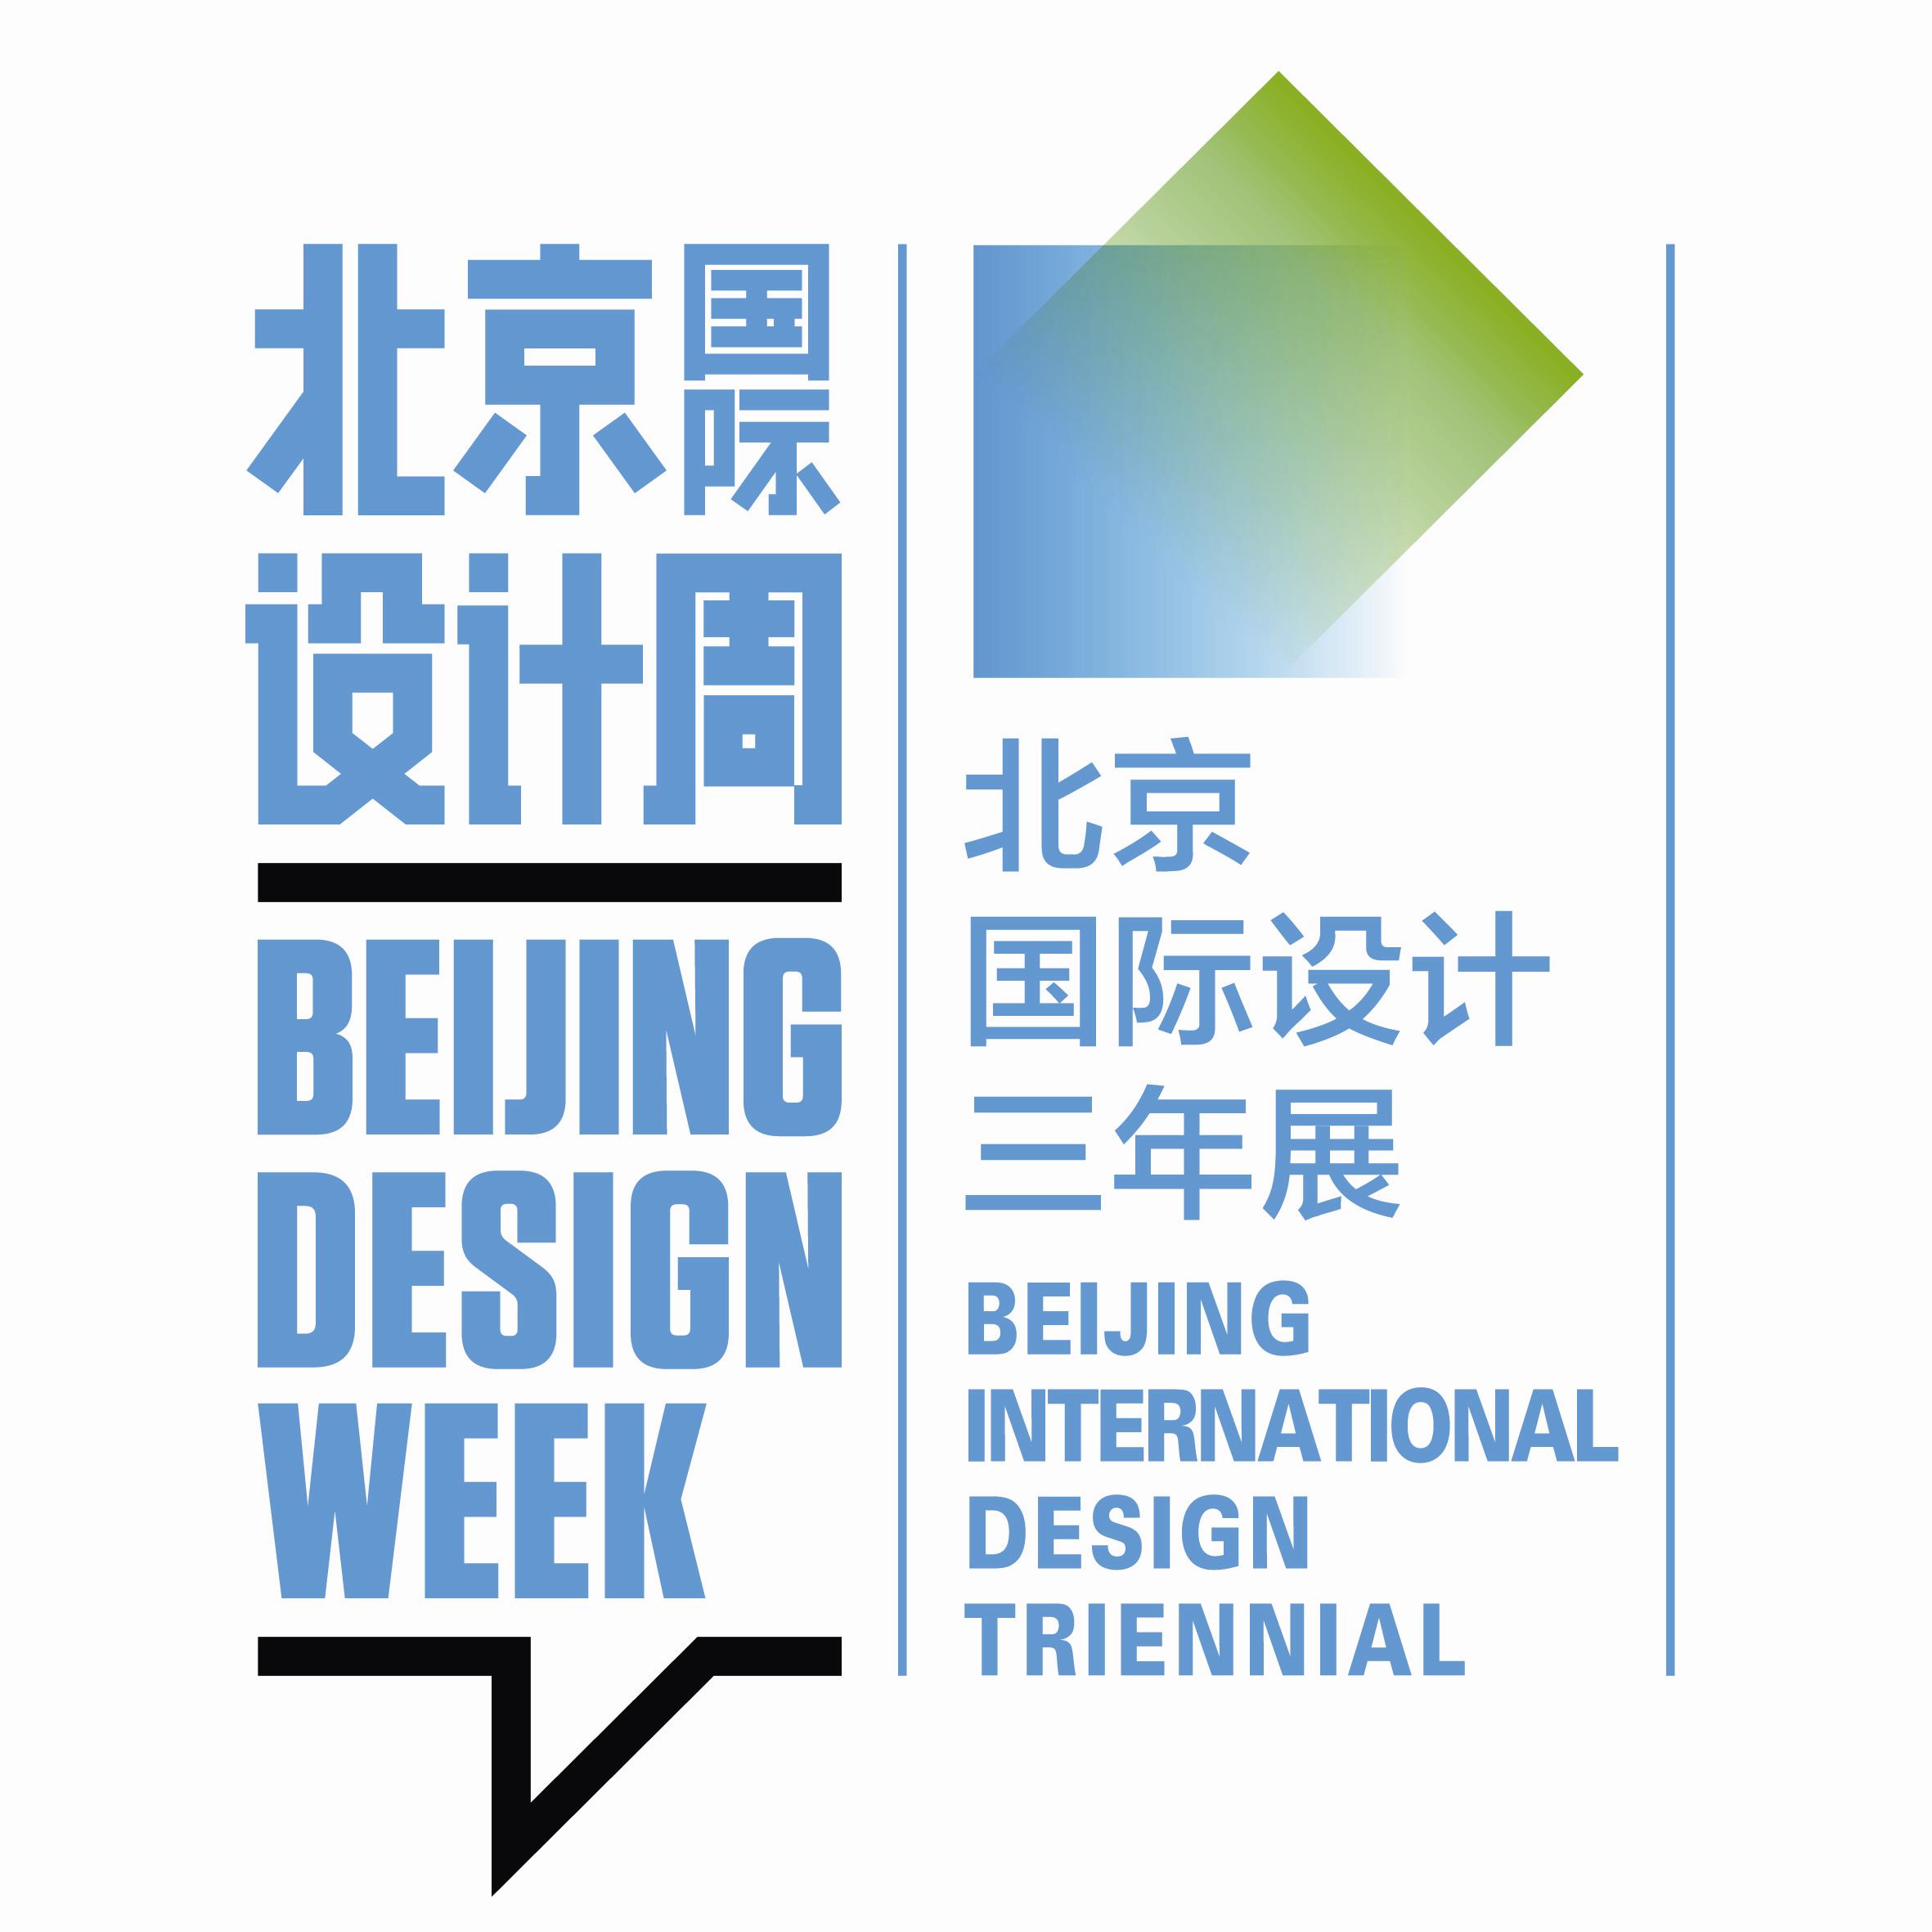 一汽-大众成为北京国际设计周官方合作伙伴 - 巴渝车网_重庆汽车门户网站